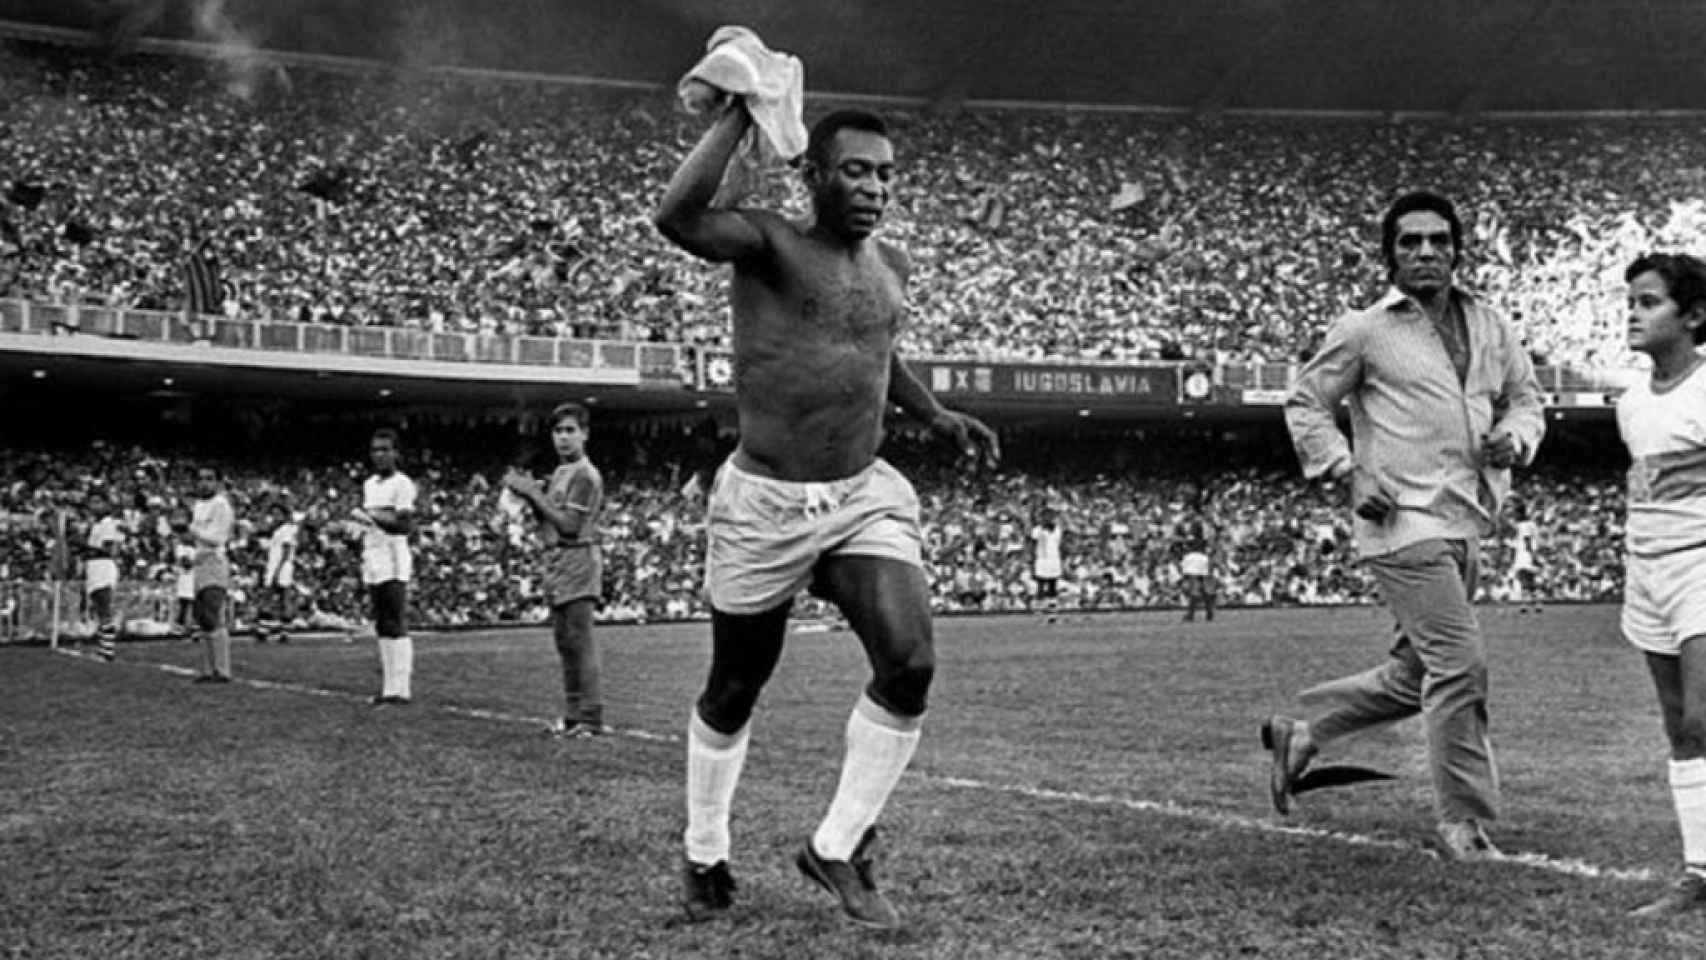 18 de julio de 1971, estadio de Maracana. Edson Arantes do Nascimento 'Pelé' jugó su último partido con Brasil. Fue ante Yugoslavia. El público, entregado a él, homenajeó al mejor jugador de la historia de Brasil.